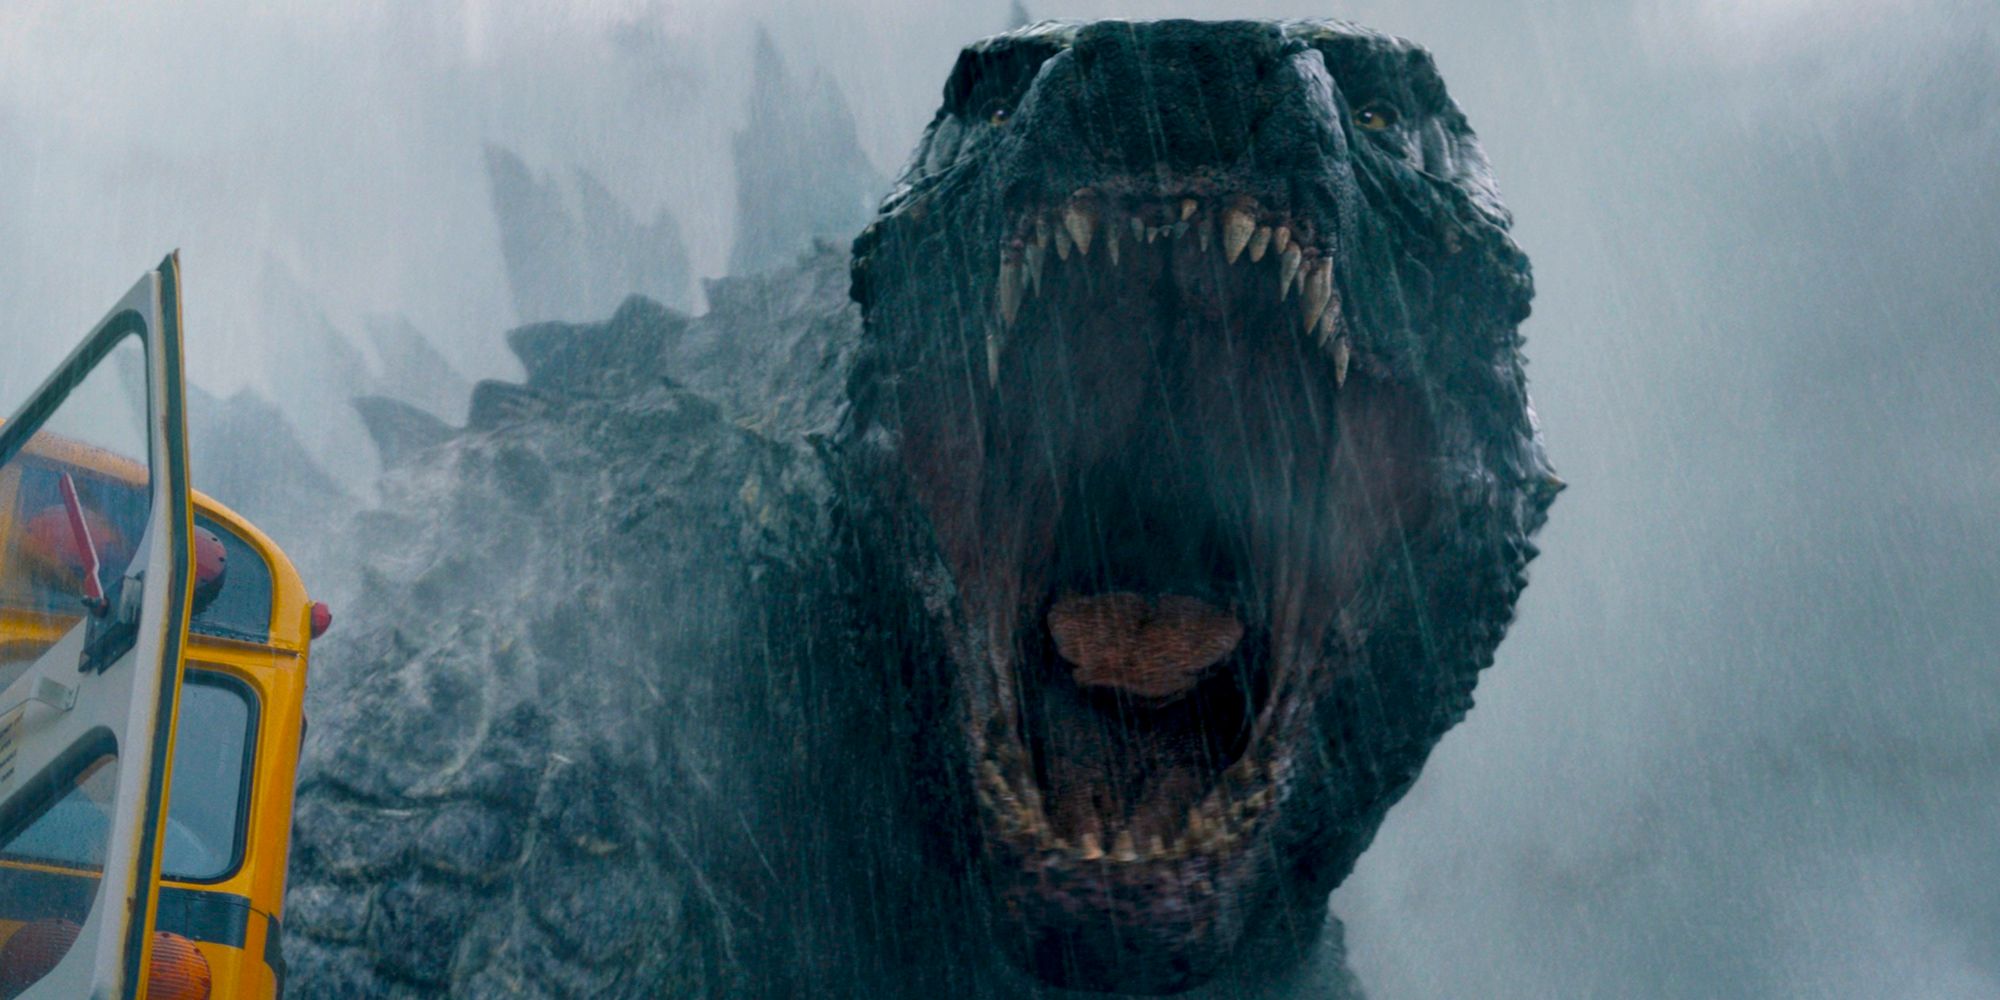 El regreso de Godzilla a MonsterVerse revelado en las primeras imágenes para el programa de televisión, detalles de la historia revelados